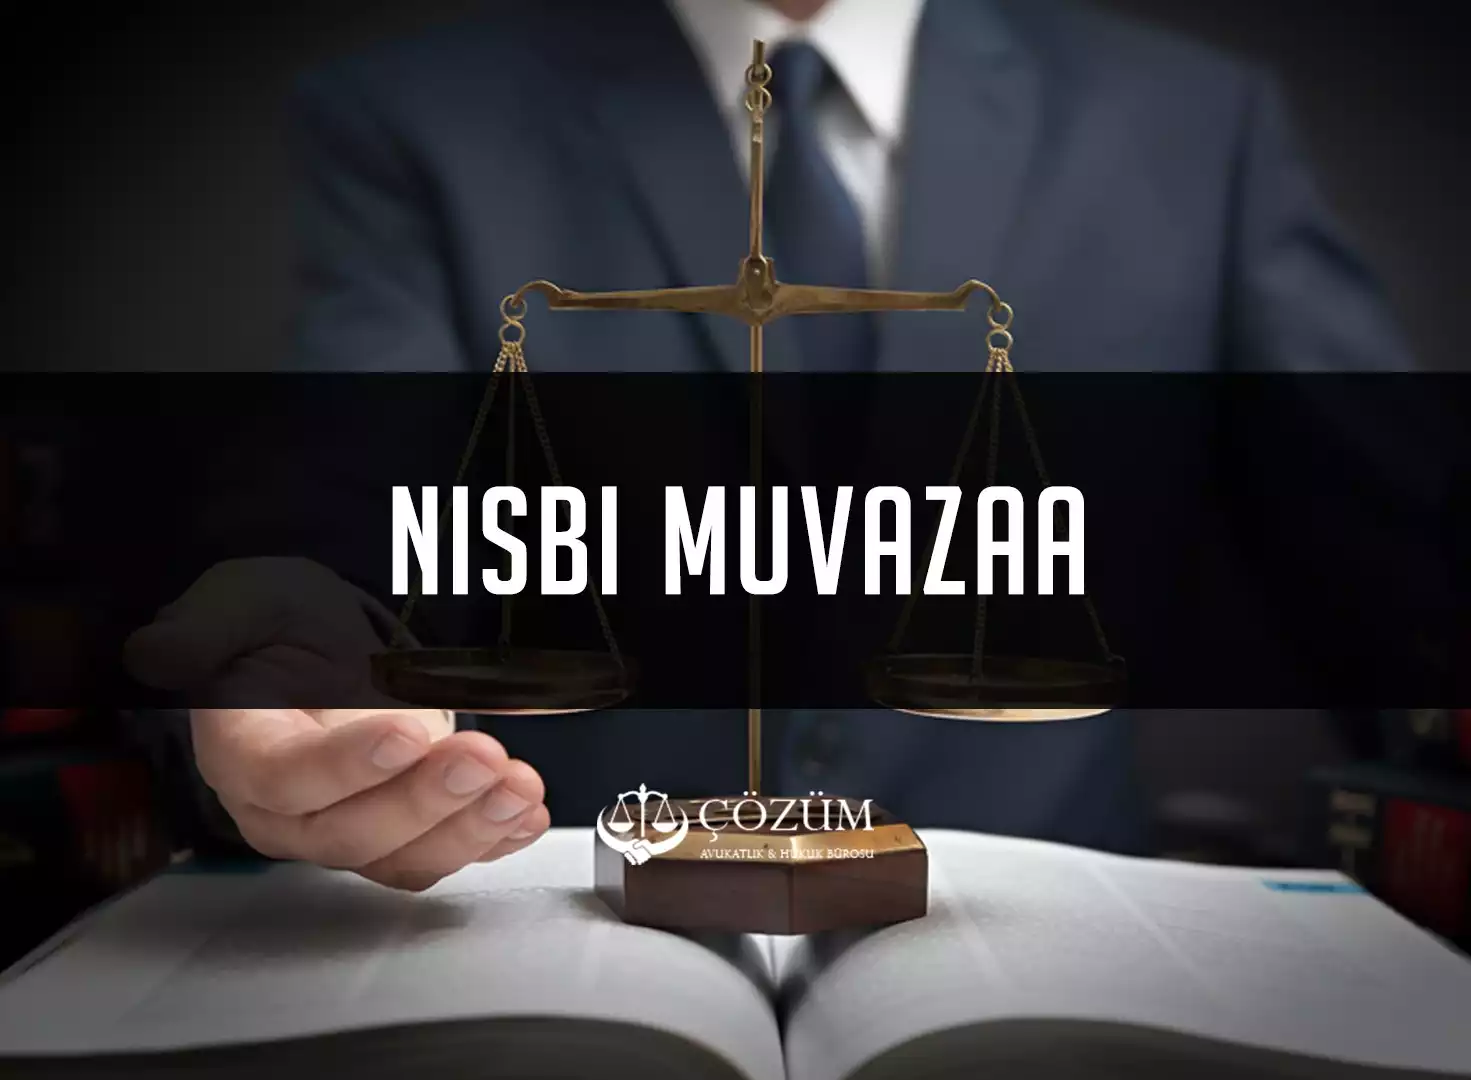 Nisbi Muvazaa